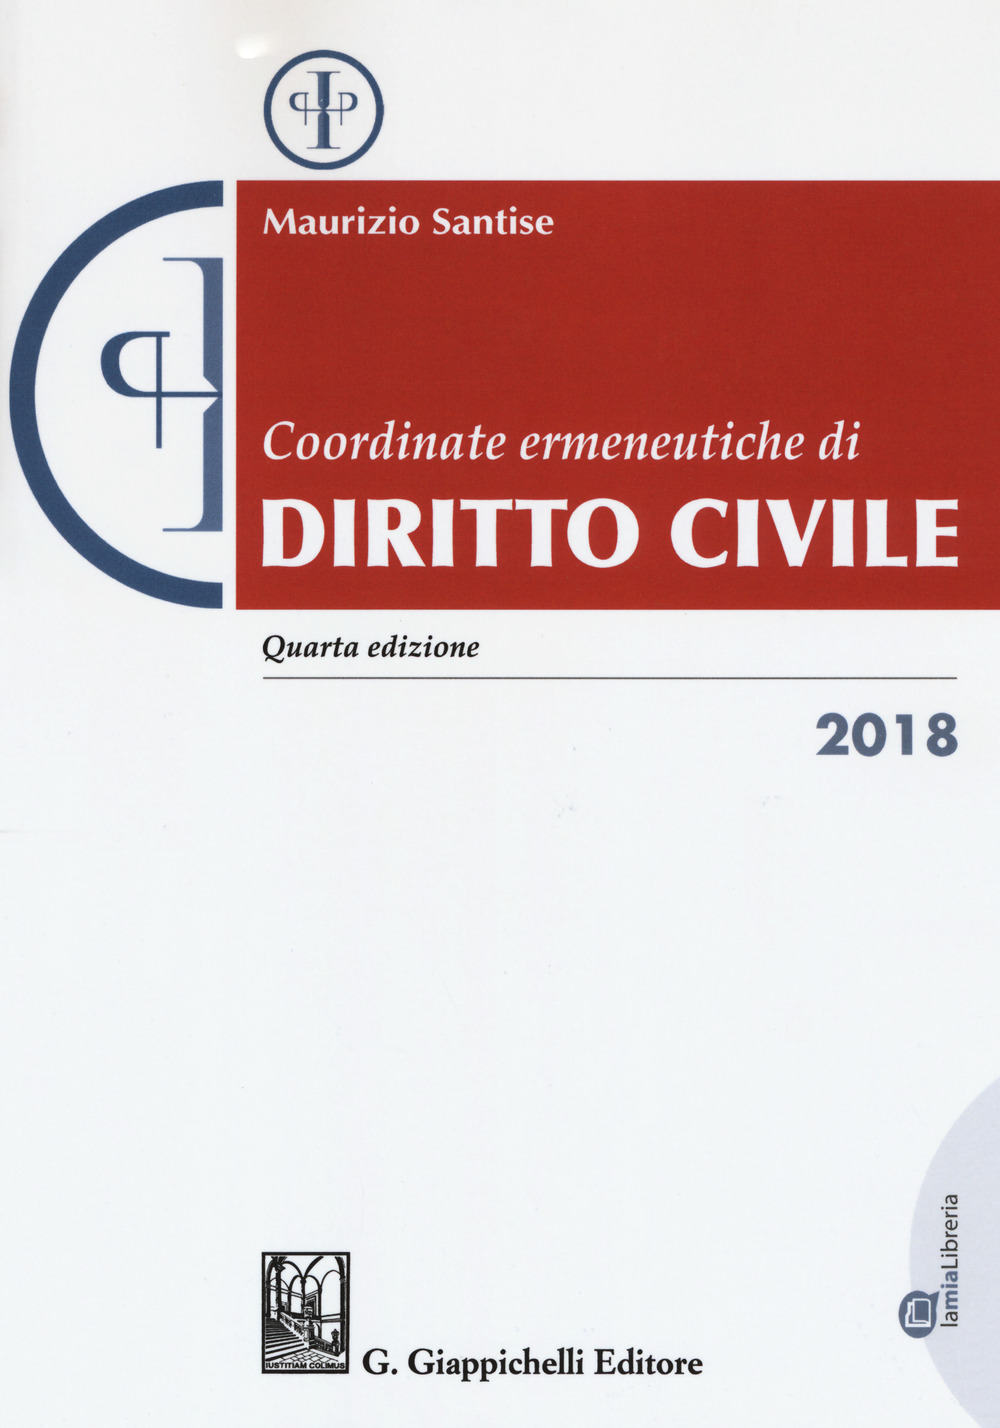 Coordinate ermeneutiche di diritto civile 2018